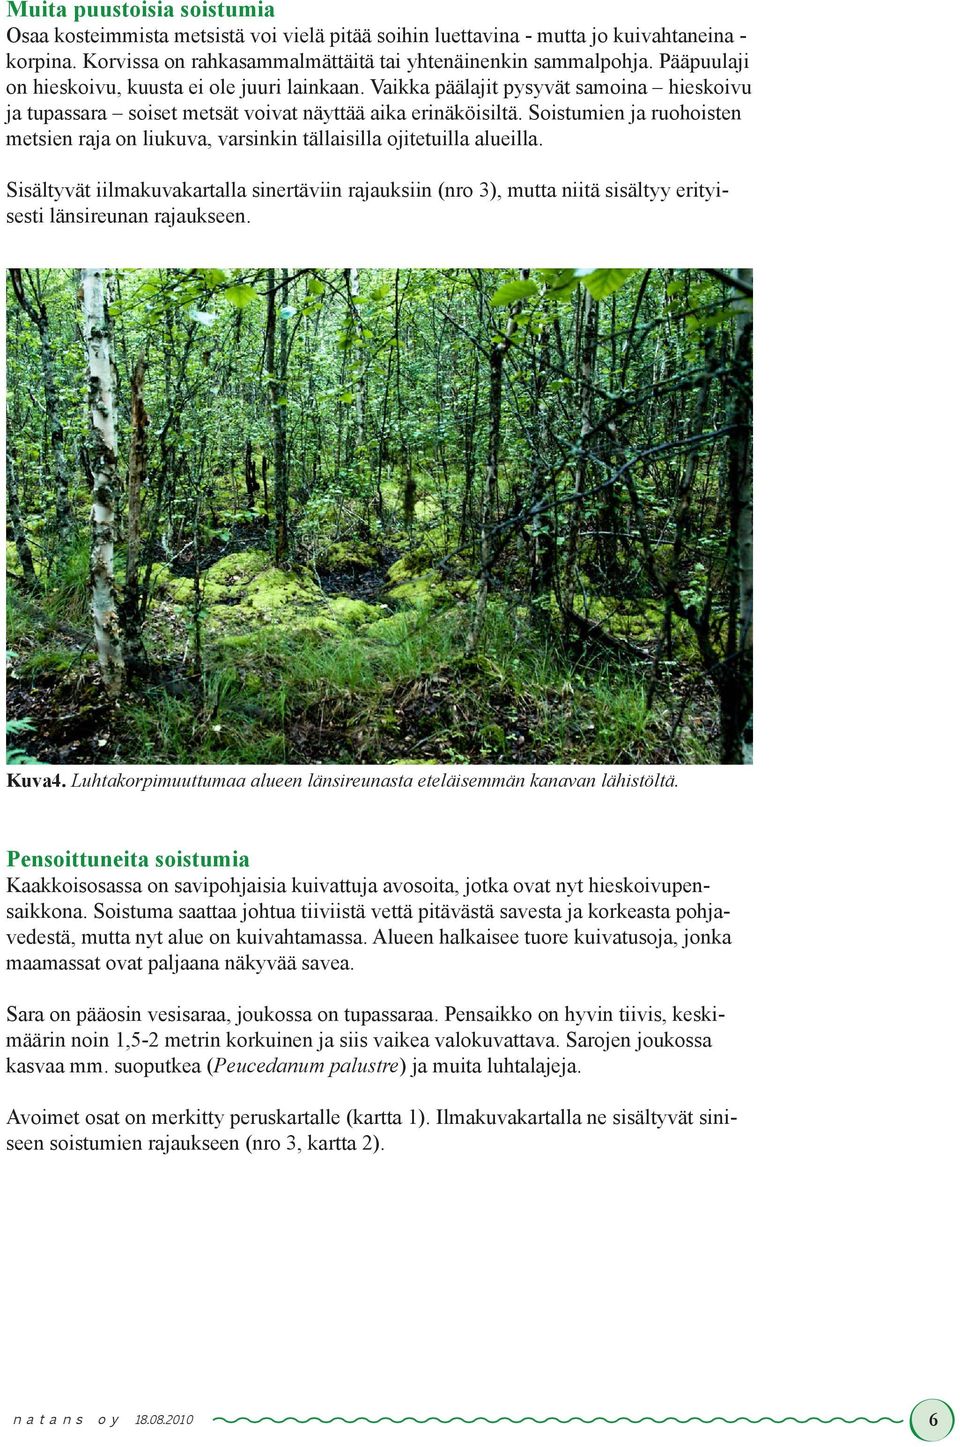 Soistumien ja ruohoisten metsien raja on liukuva, varsinkin tällaisilla ojitetuilla alueilla.